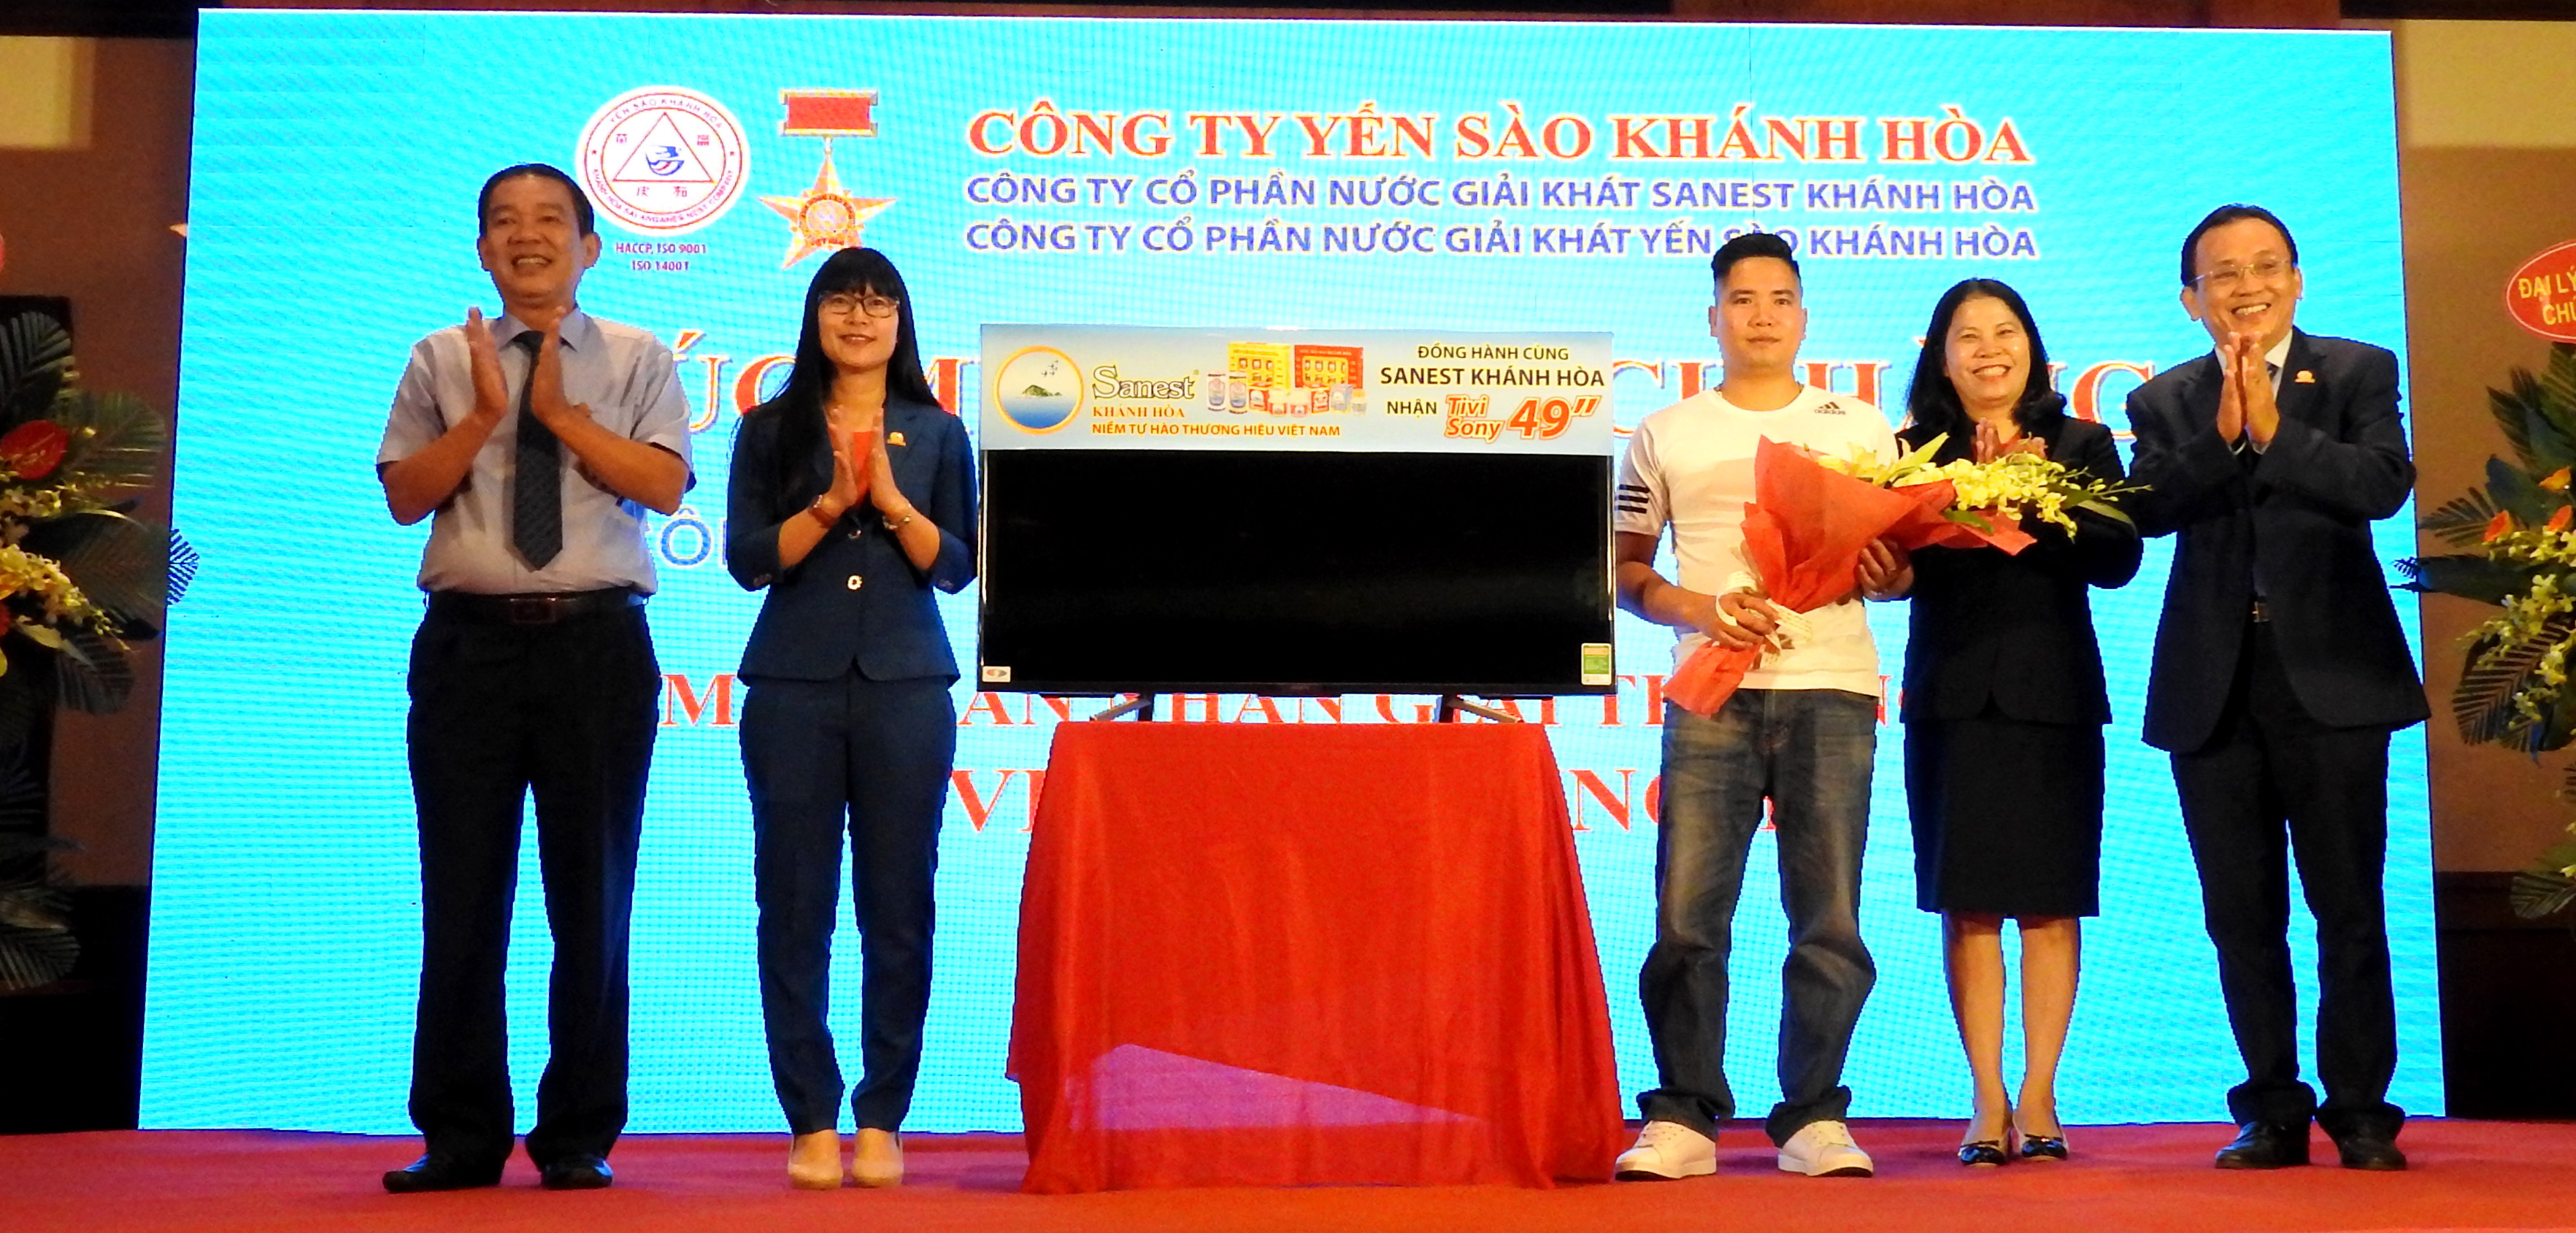 Trao giải thưởng đợt 4 chương trình "Sanest Khánh Hòa - Niềm tự hào thương hiệu Việt Nam"